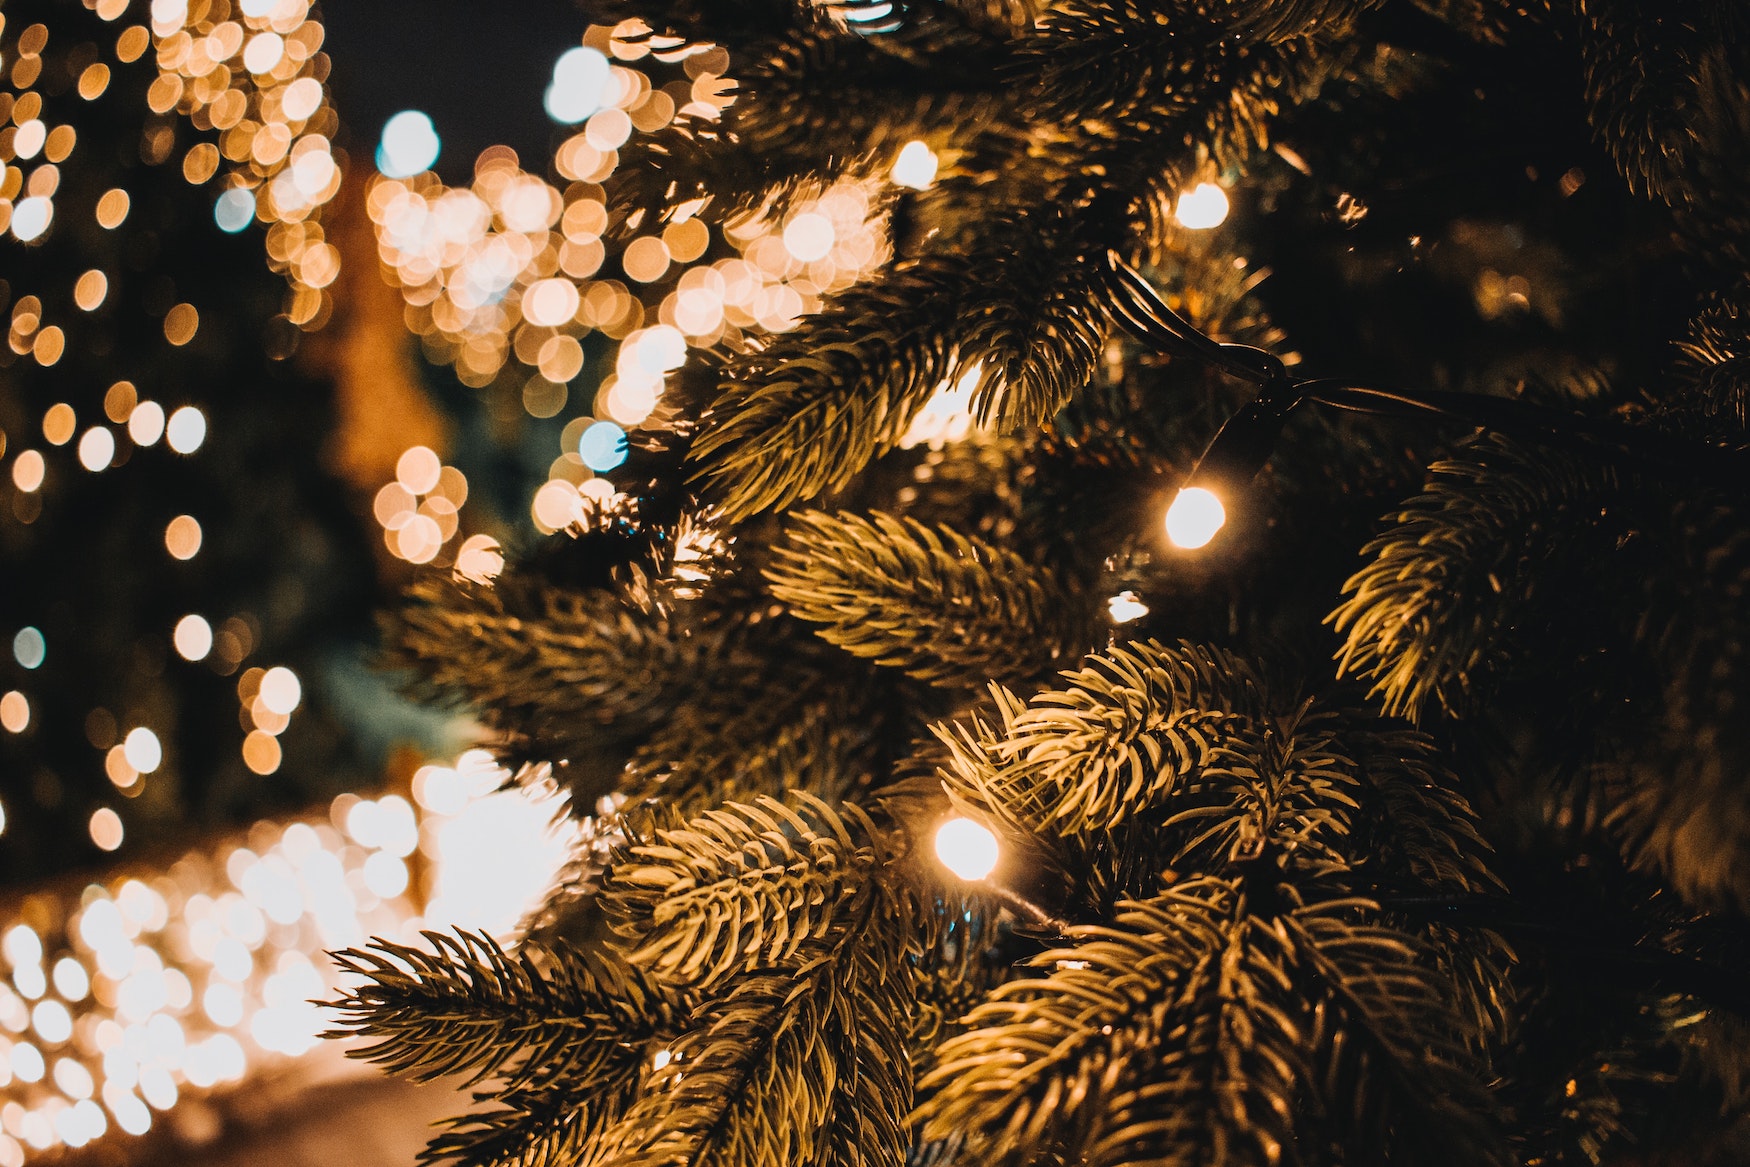 LED-Lichterkette an Weihnachtsbaum